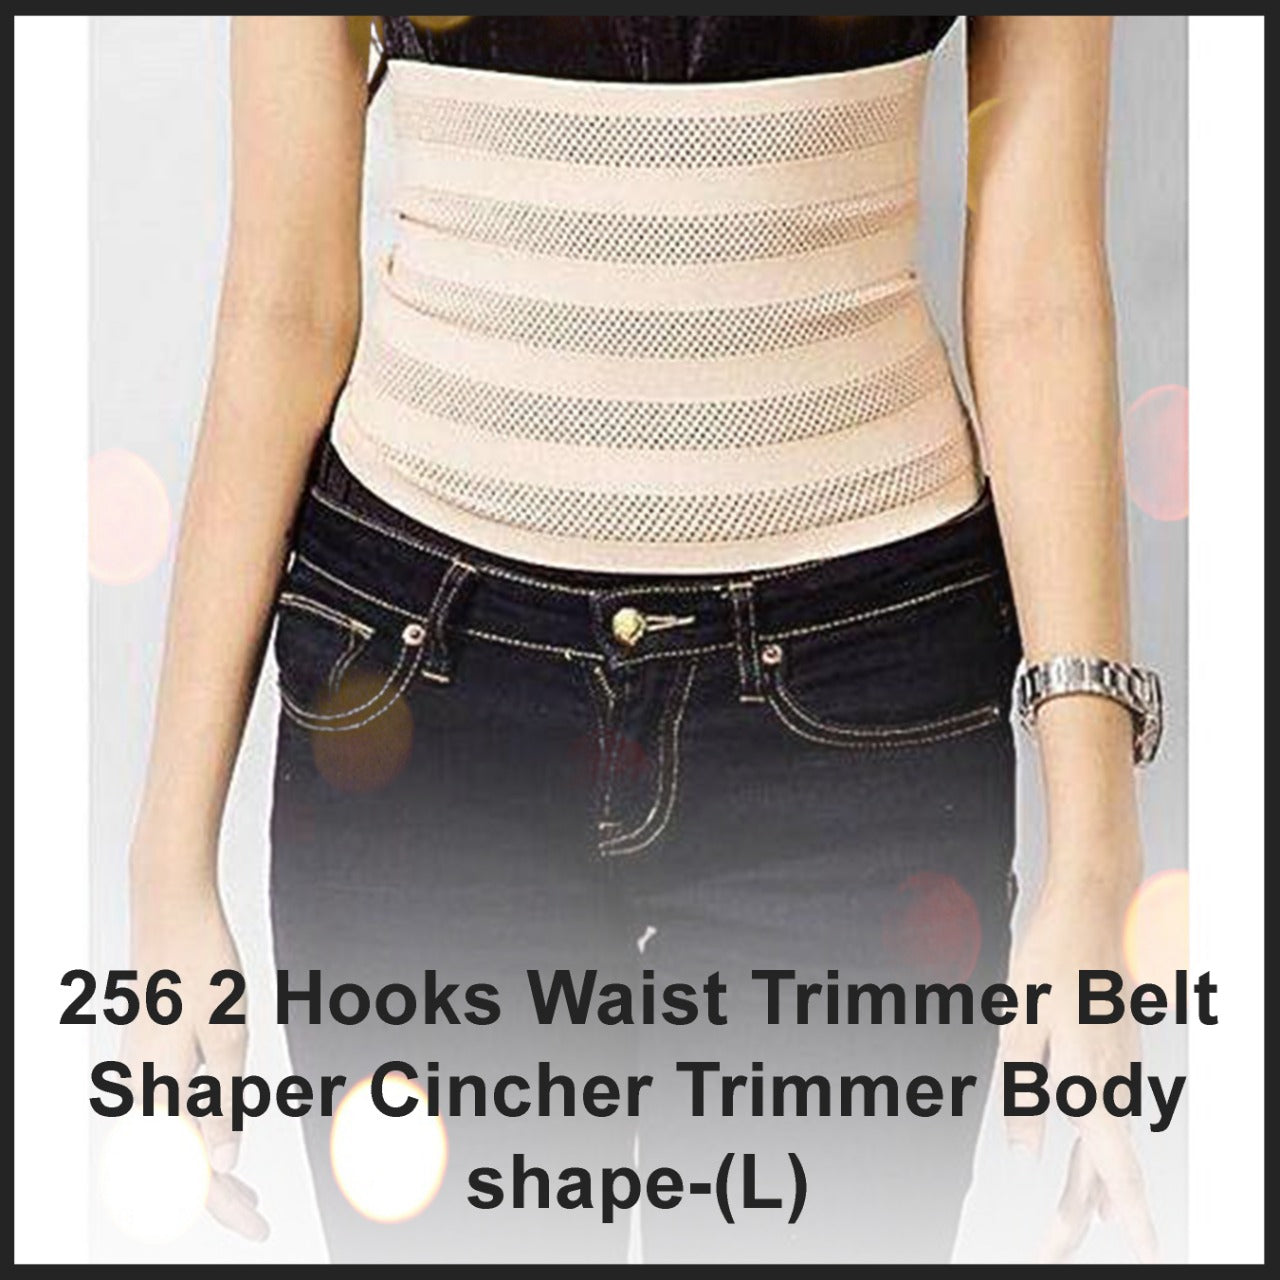 2 Hooks Waist Trimmer Belt Shaper Cincher Trimmer Body shape – (L)